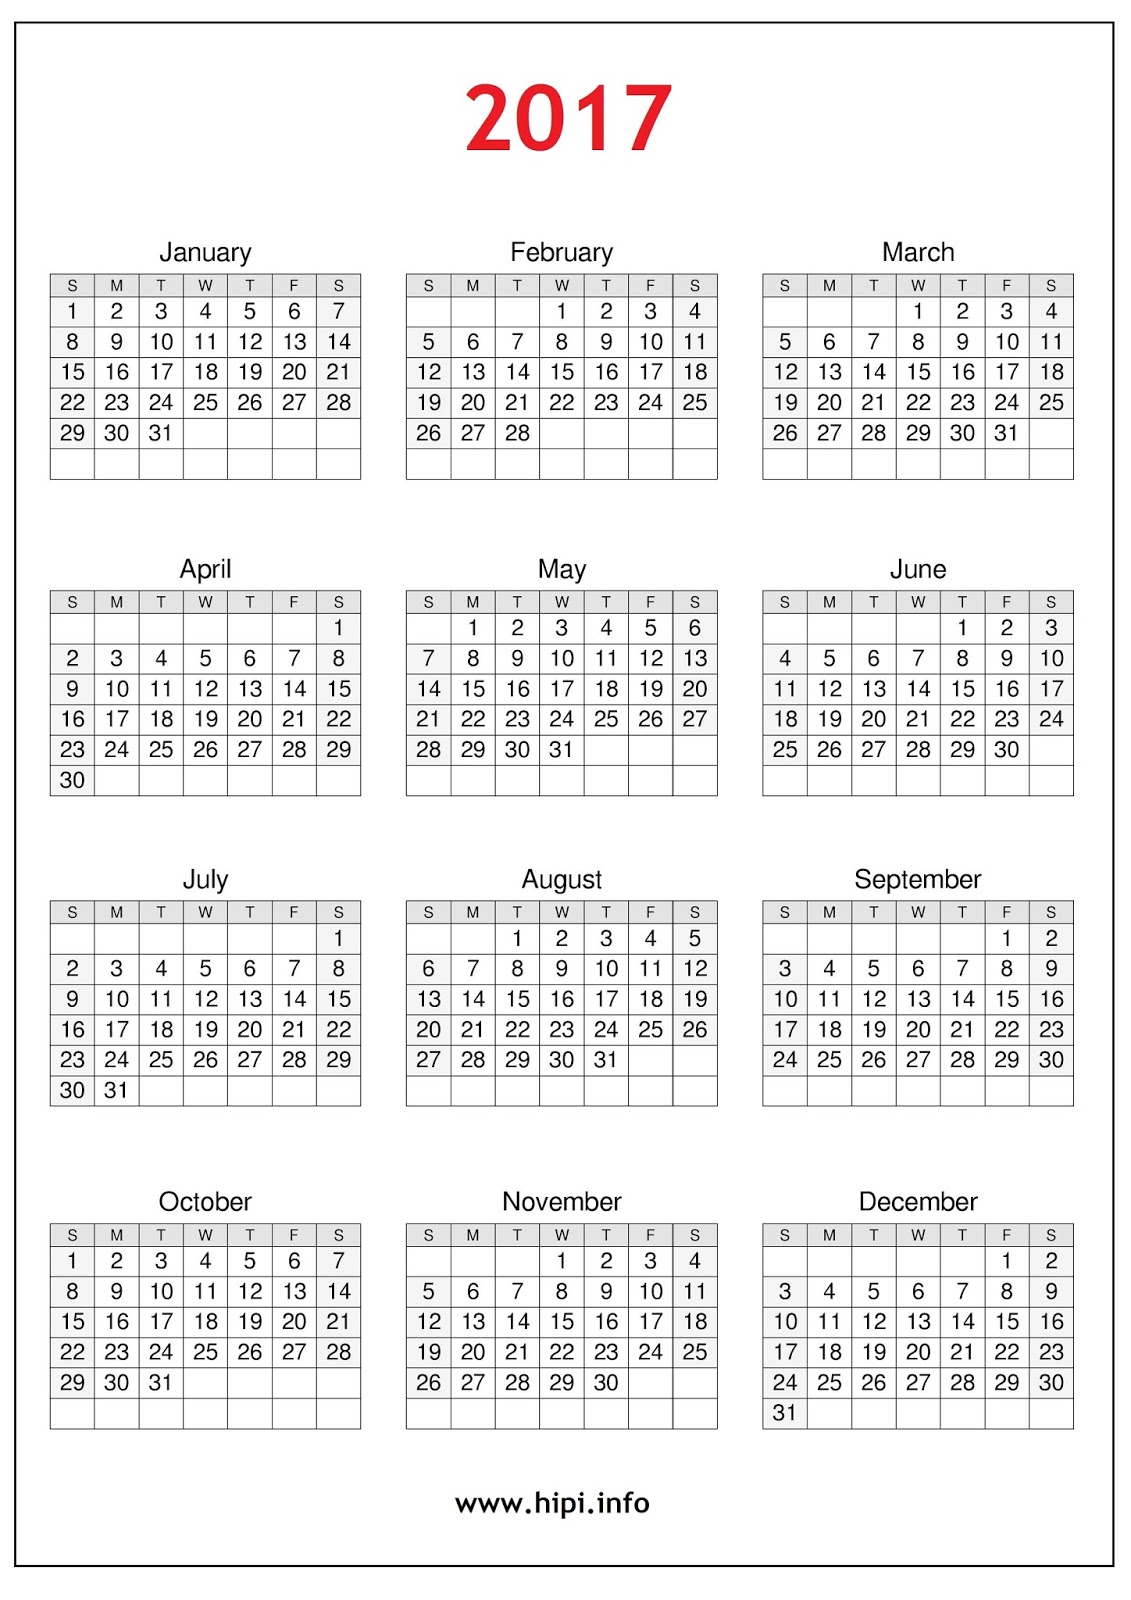 calendars-printable-twitter-headers-facebook-covers-wallpapers-2017-calendar-printable